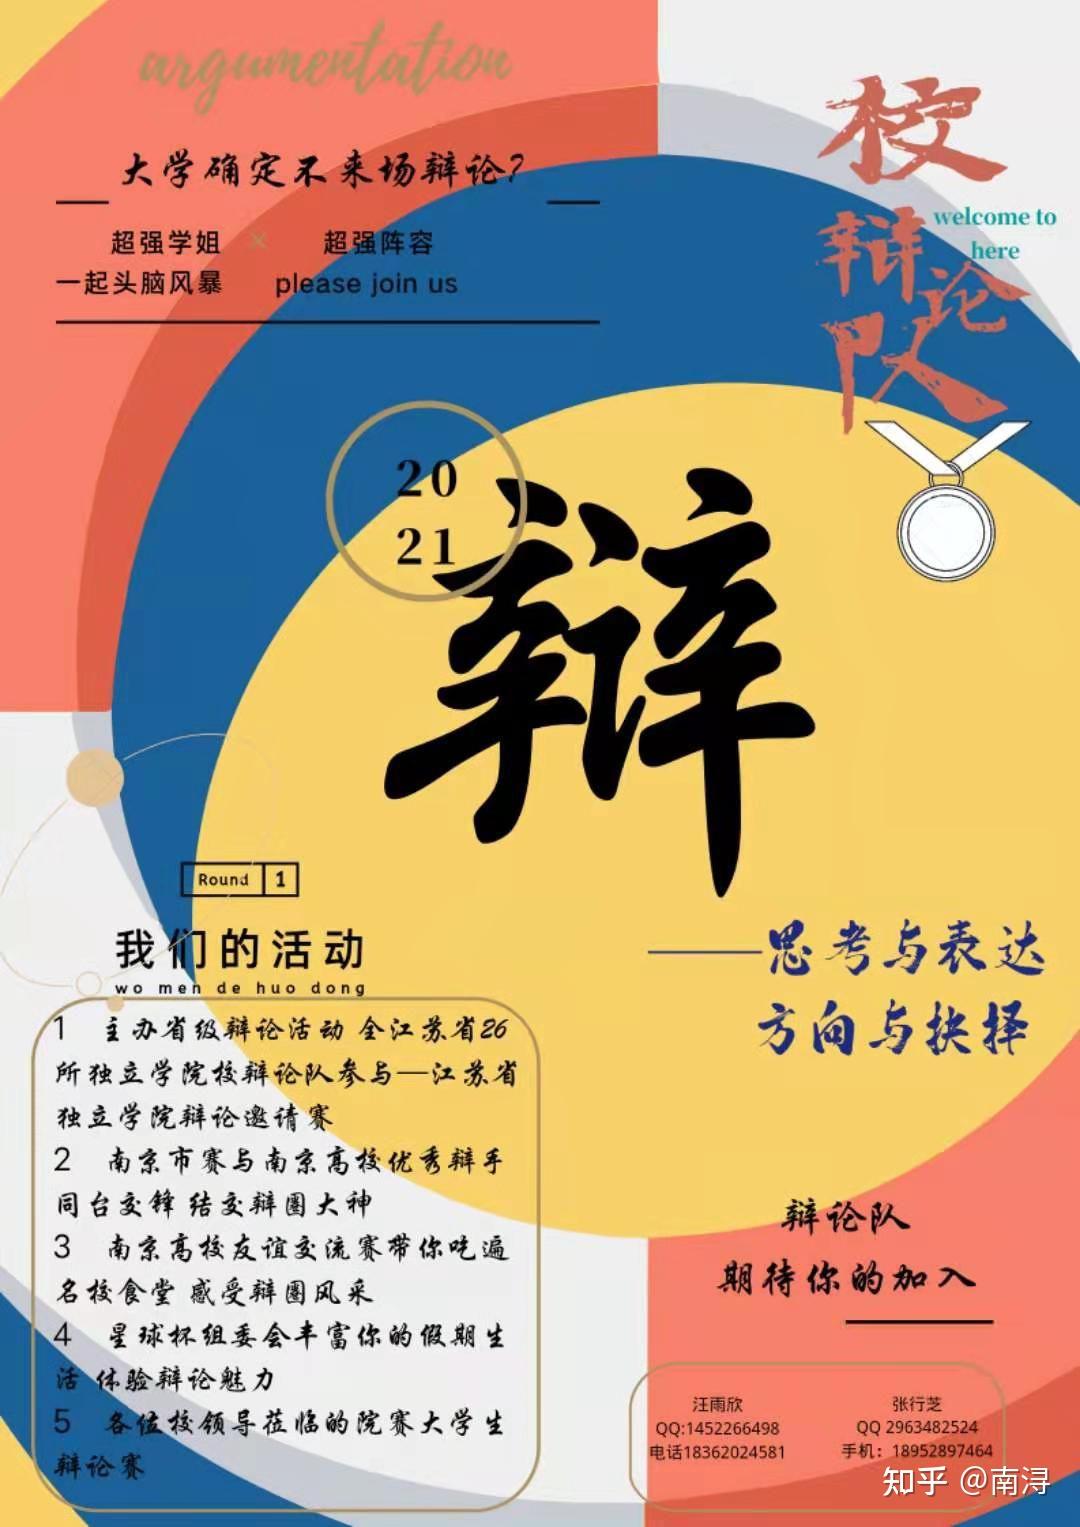 南京财经大学红山学院2021年辩论队招新啦